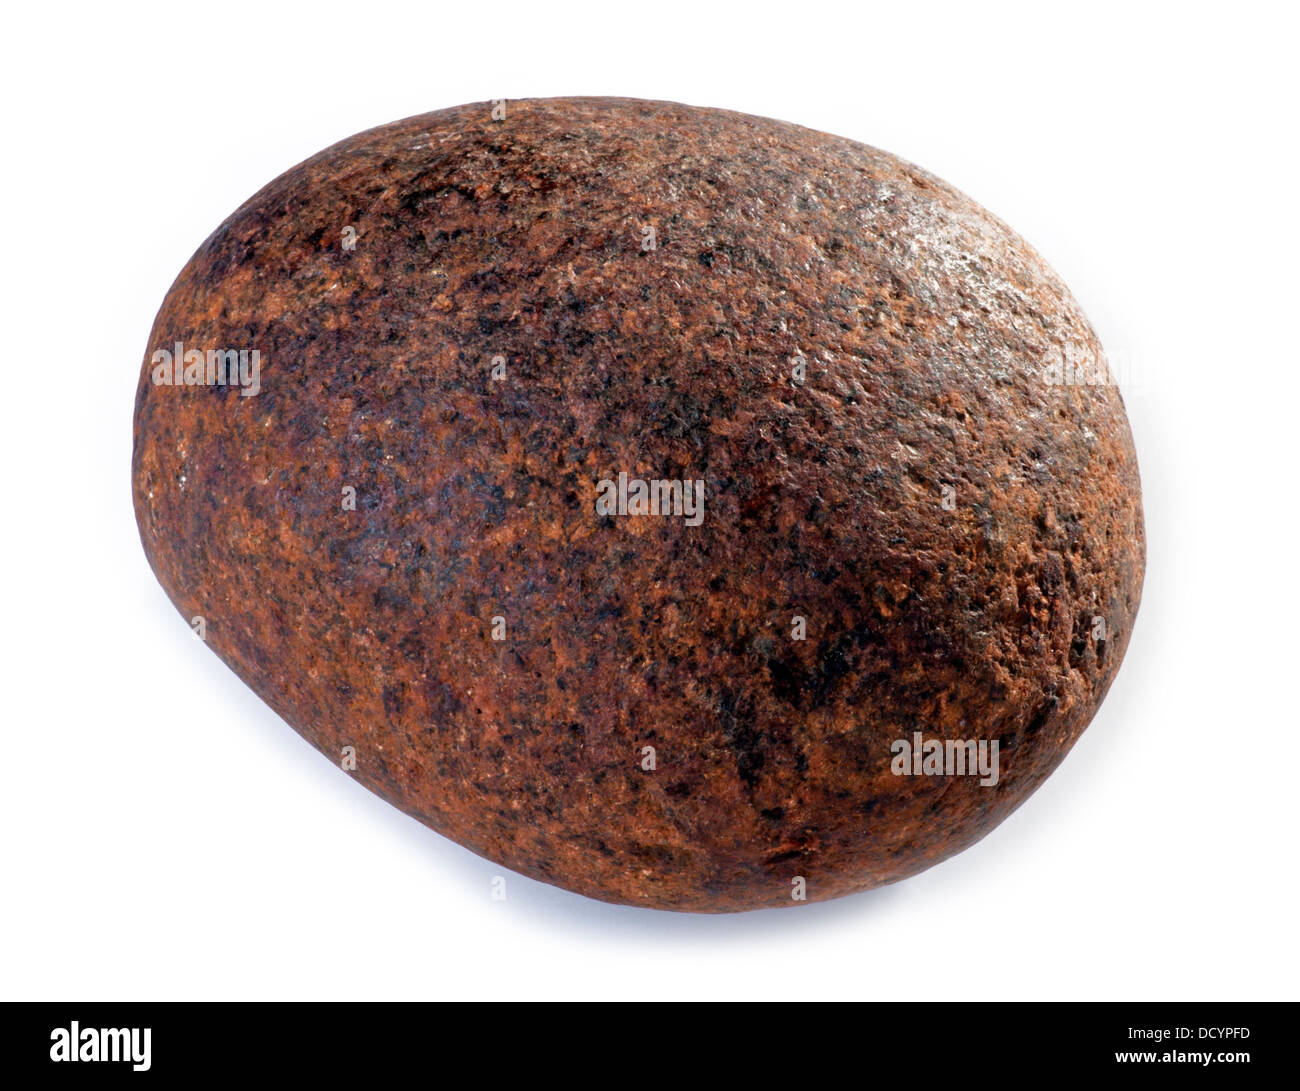 Hierro - boulder de mineral de hierro oxidado Foto de stock